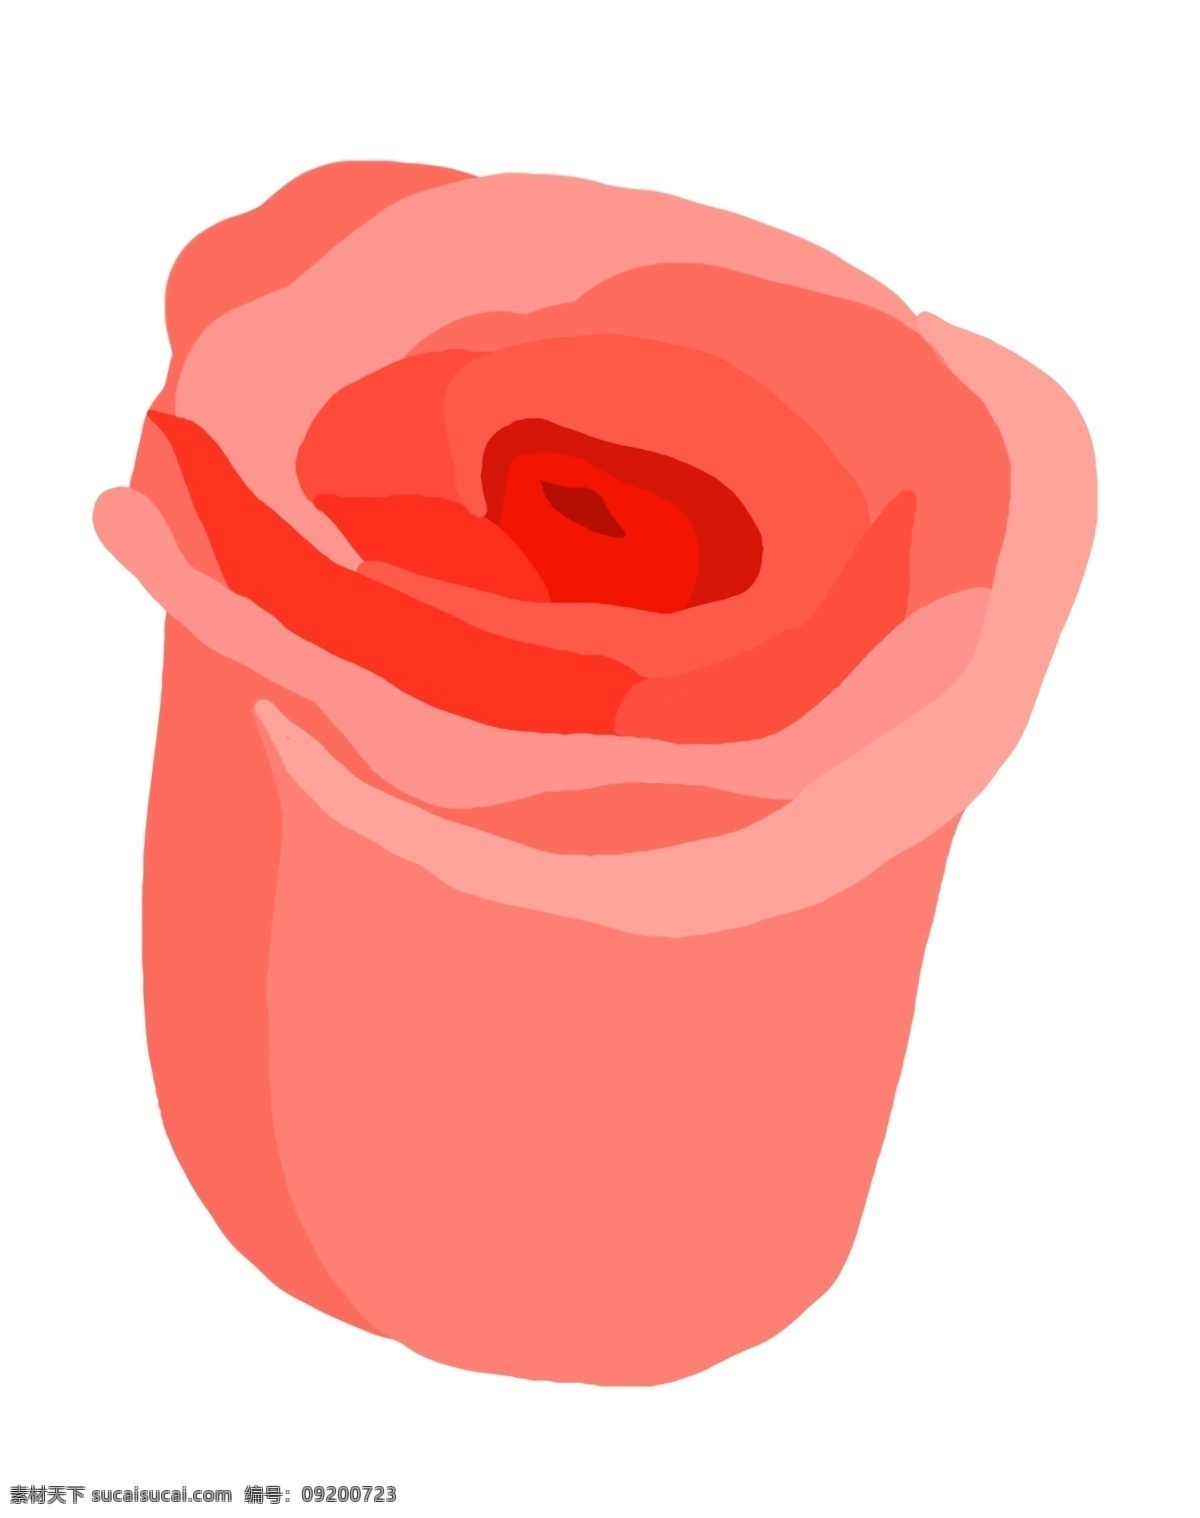 玫瑰 花朵 卡通 插画 红色的花朵 卡通插画 花朵插画 植物插画 鲜花花束 花朵装饰 玫瑰的花朵